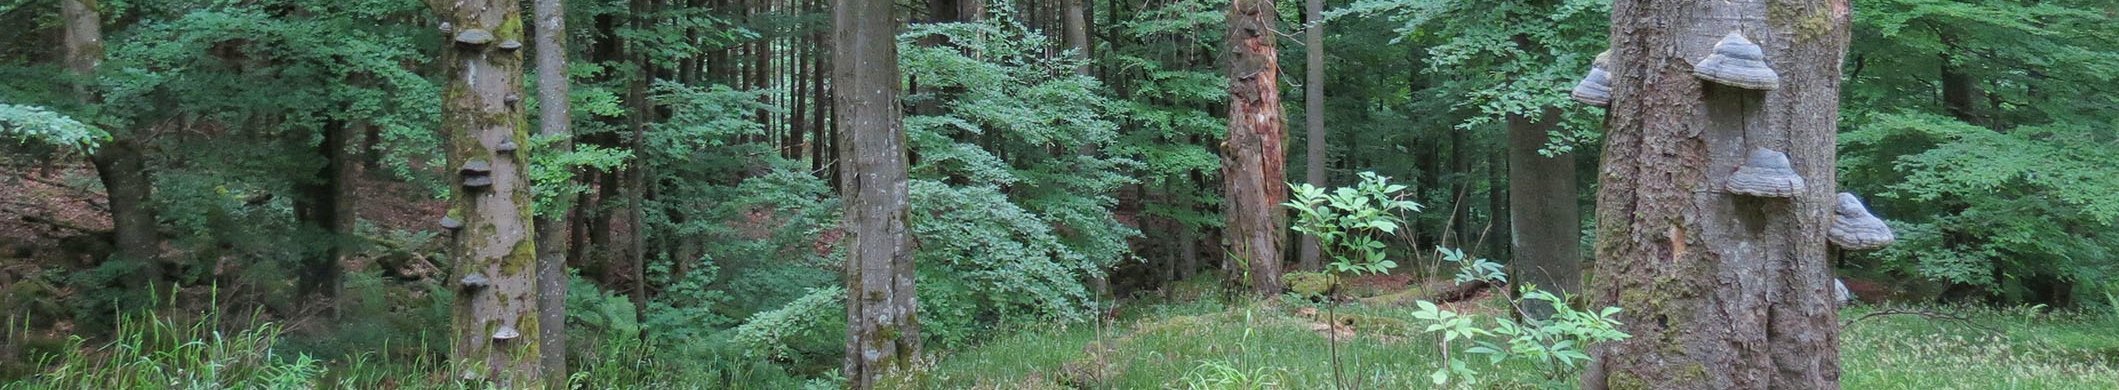 Naturwald mit Moosen und Baumpilzen